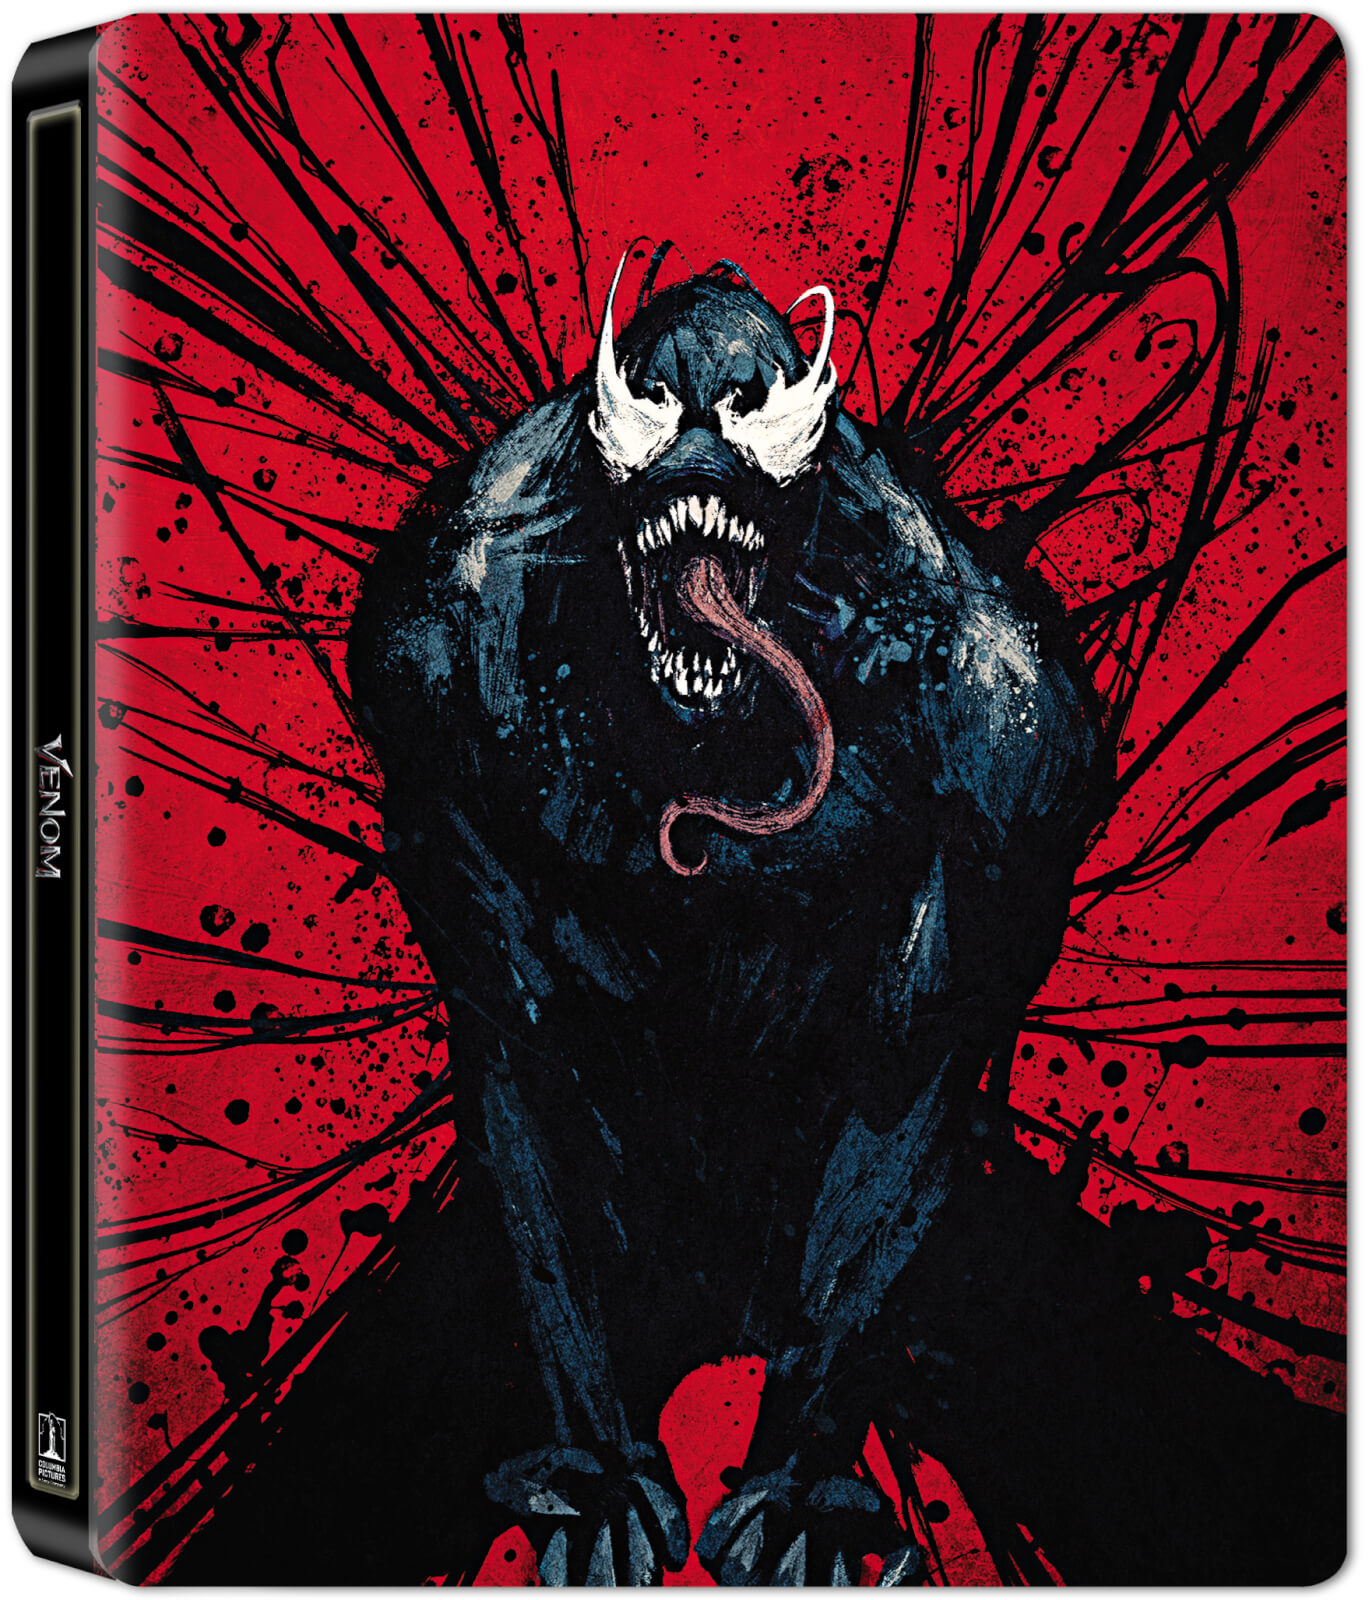 Venom (Blu-Ray Disc ) 2D++ bonus disc Steelbook -editie limitata International Keyart Version / Venom | Ruben Fleischer